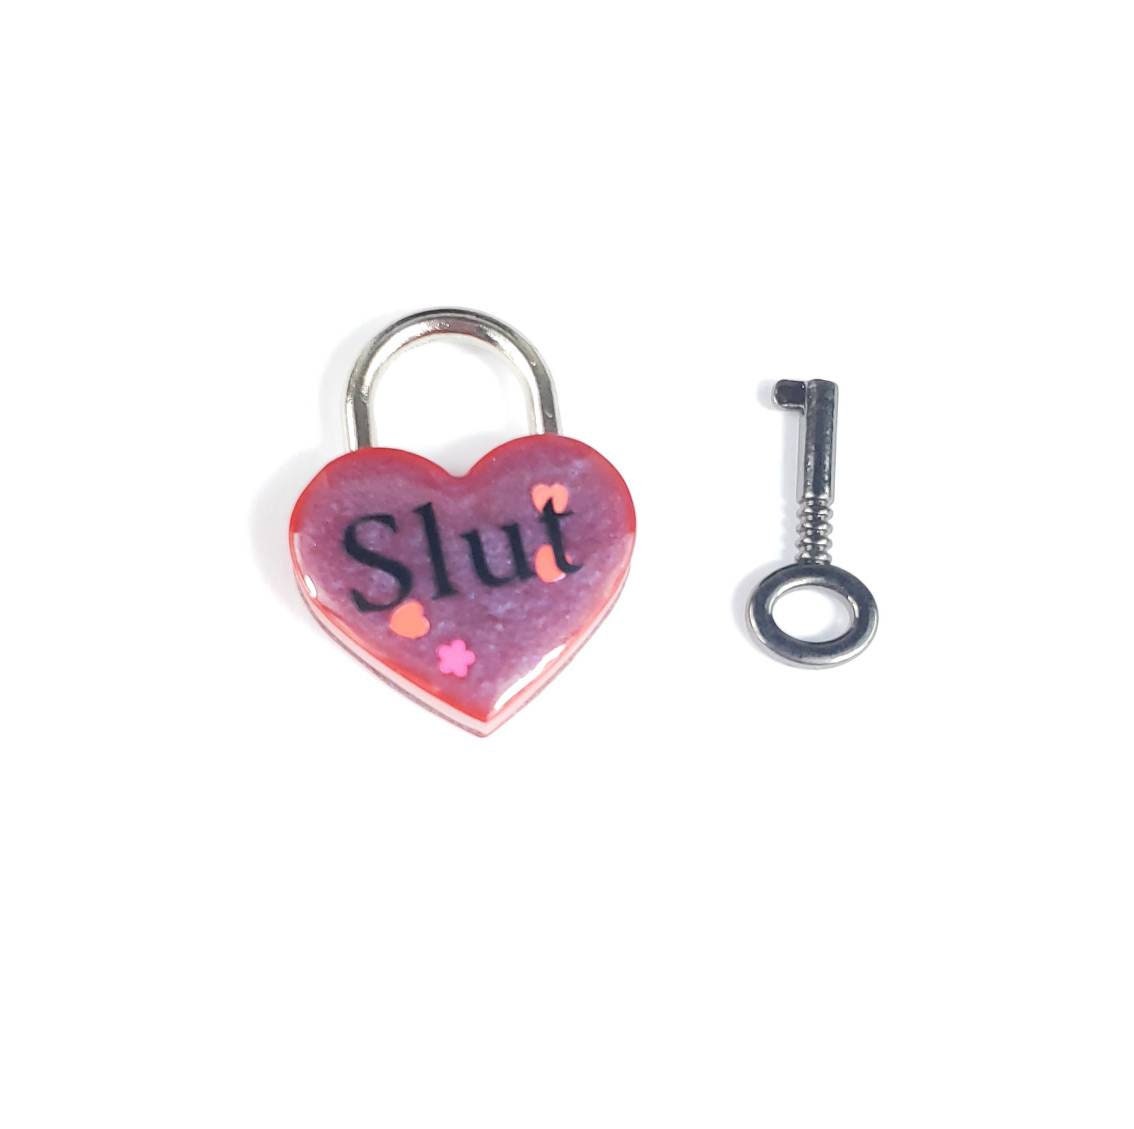 Slut Heart Pad Lock- Resin Aluminum Heart Lock- BDSM Collar Closure Lock- DDLG Heart Lock and Key- Pet Play Heart Lock- Red Mini Lock